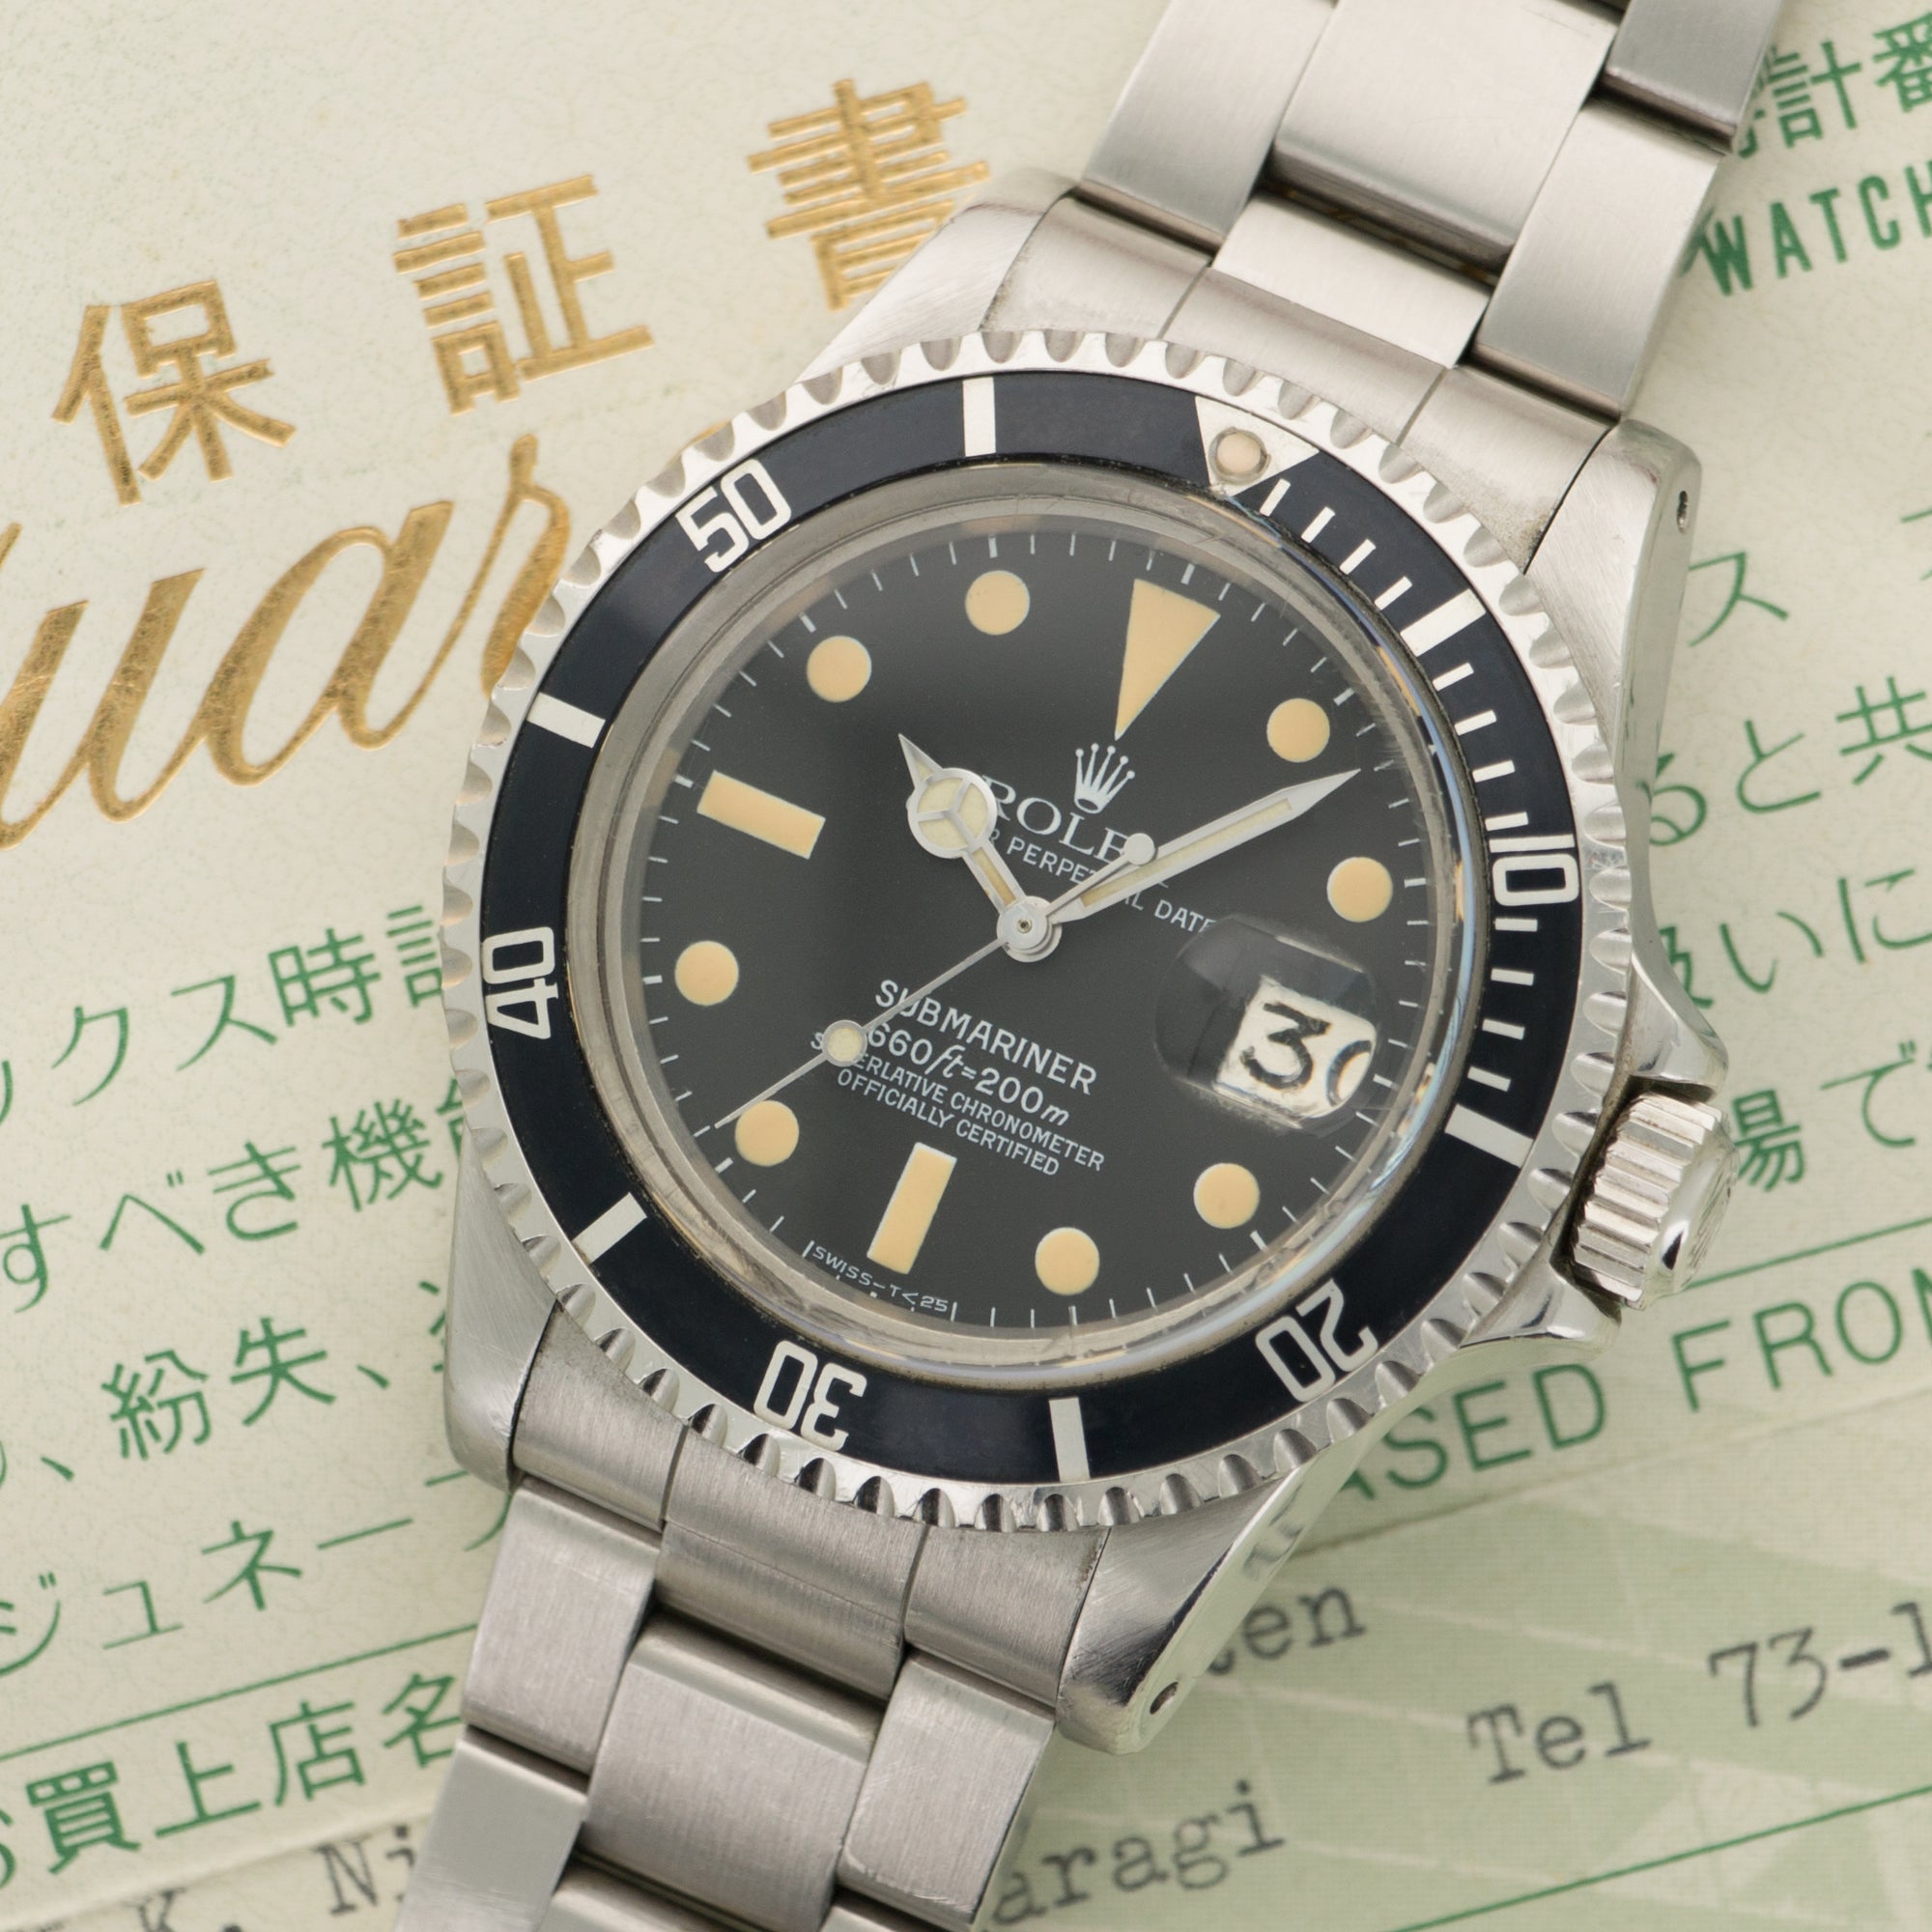 Rolex - Rolex Steel Submariner Watch Ref. 1680 with Paper - The Keystone Watches